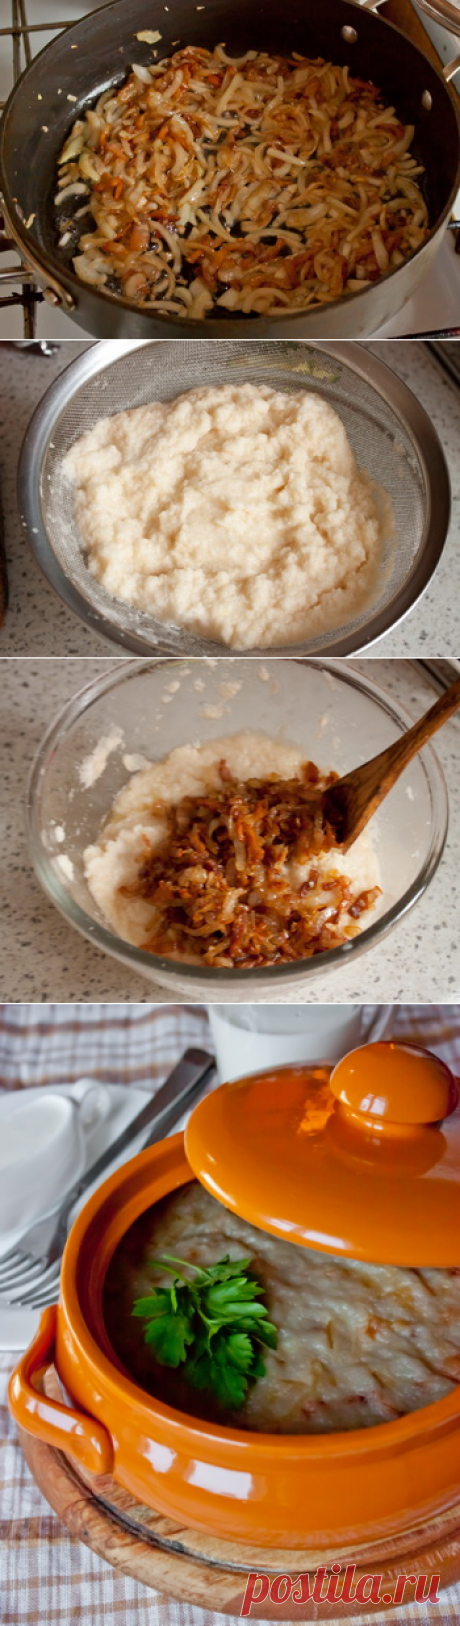 Пошаговый фото-рецепт картофельной бабки | Вторые блюда | Вкусный блог - рецепты под настроение